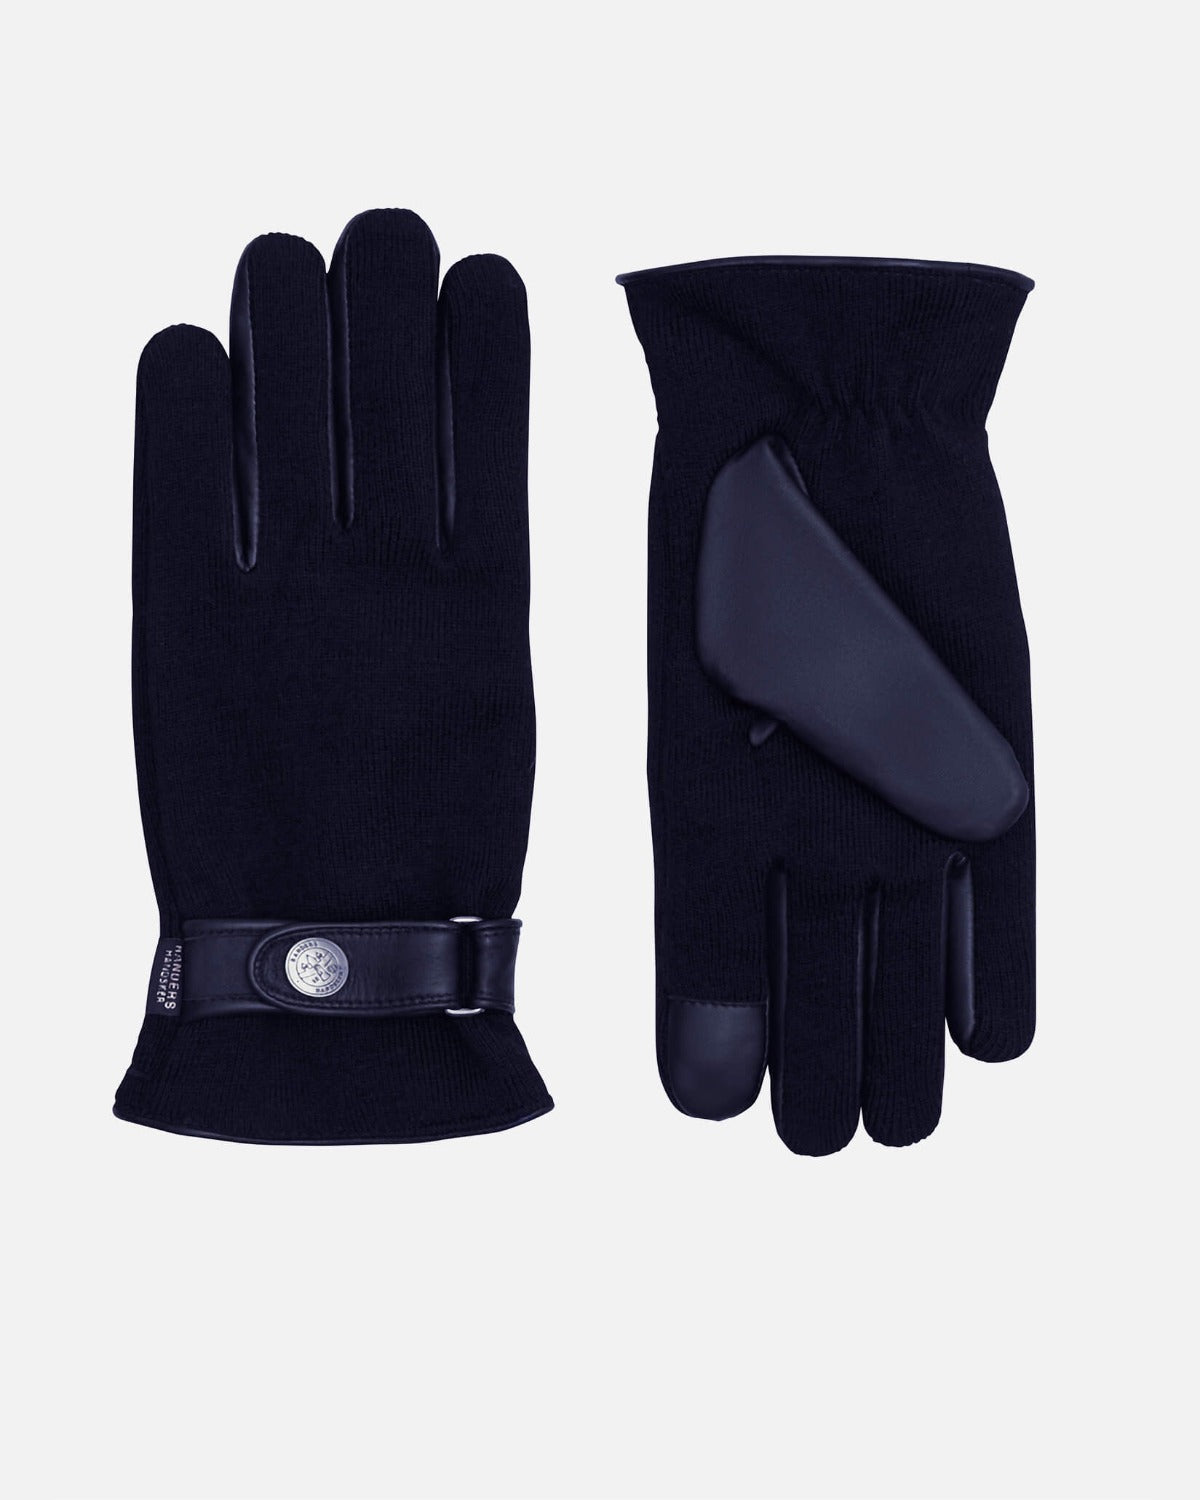 politi Jobtilbud assimilation Randers Handsker » Leather and ribbed cotton gloves|RHANDERS